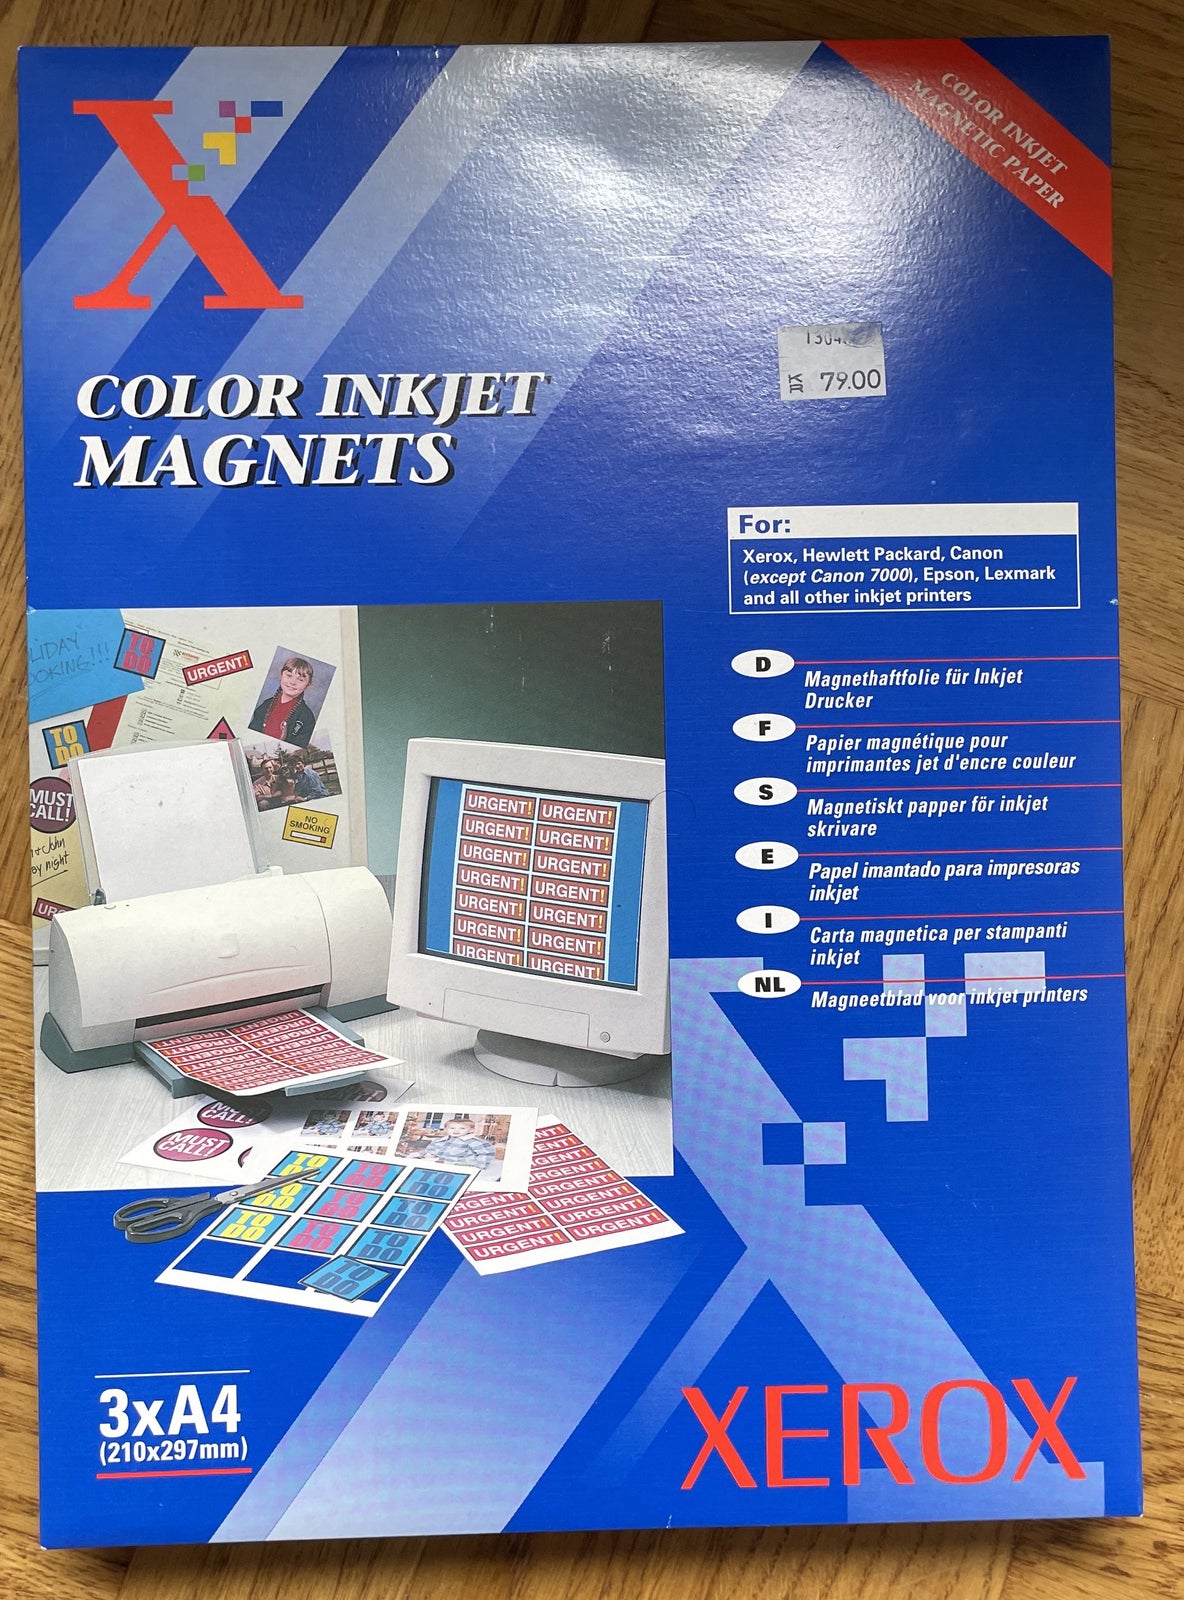 Fotopapir magnetisk, Xerox, Color inkjet magnets